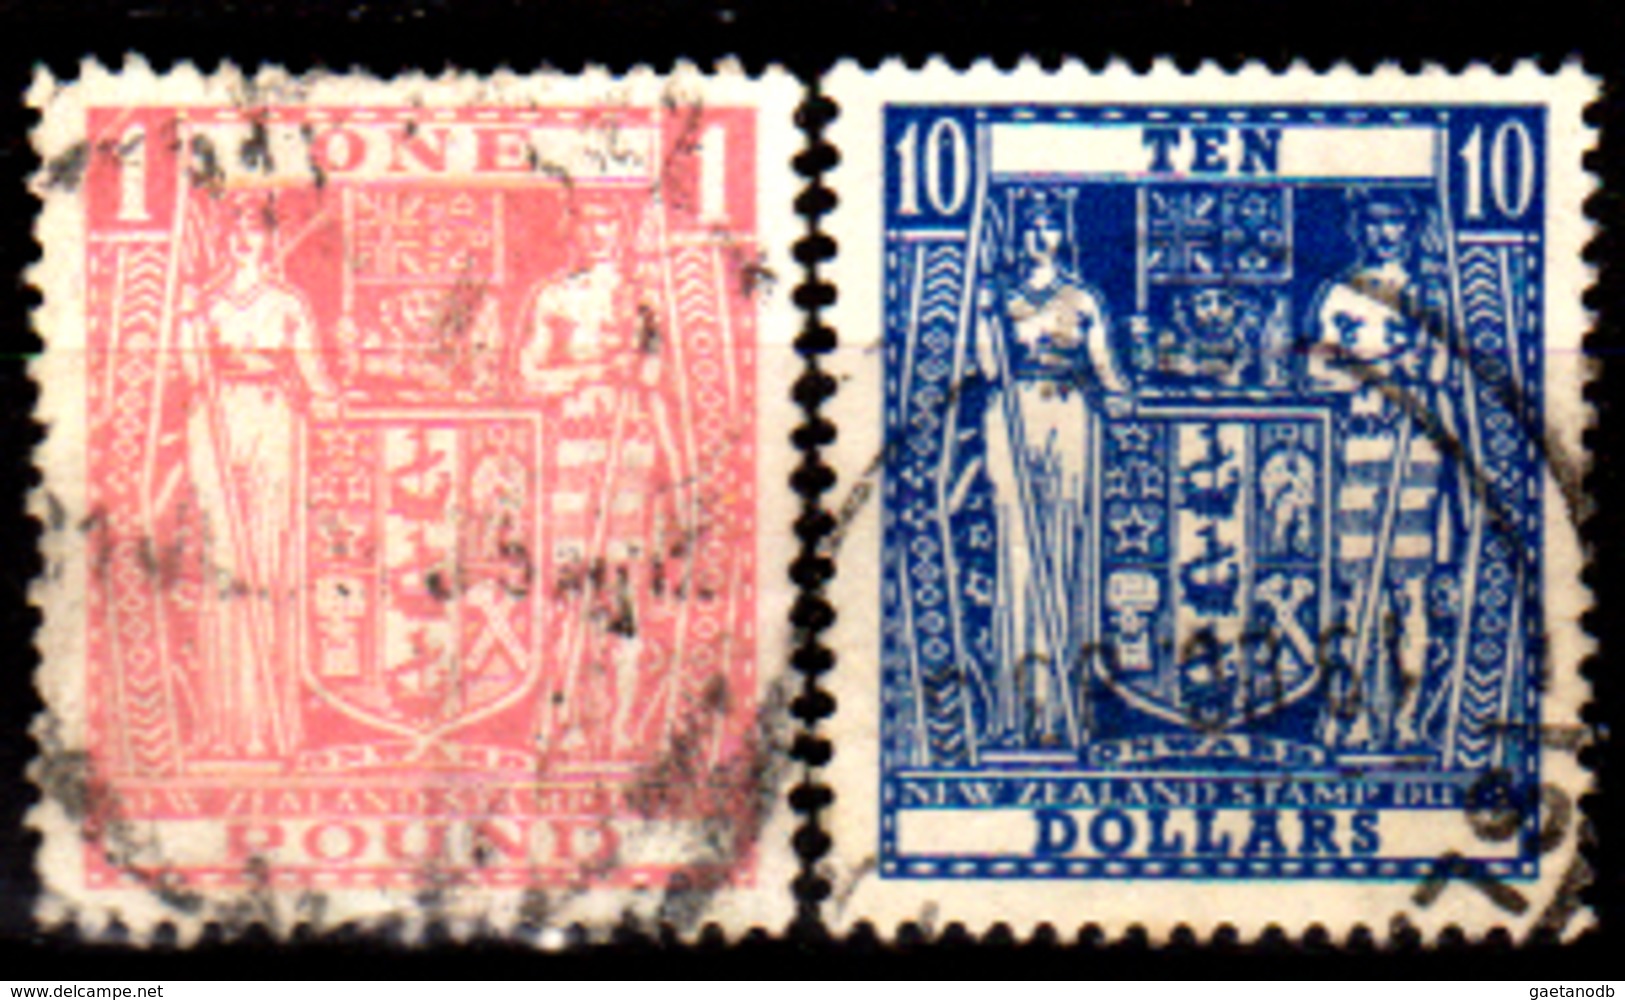 Nuova-Zelanda-0087 - Fiscali Postali 1931-86 (o) Used - Senza Difetti Occulti. - Fiscaux-postaux